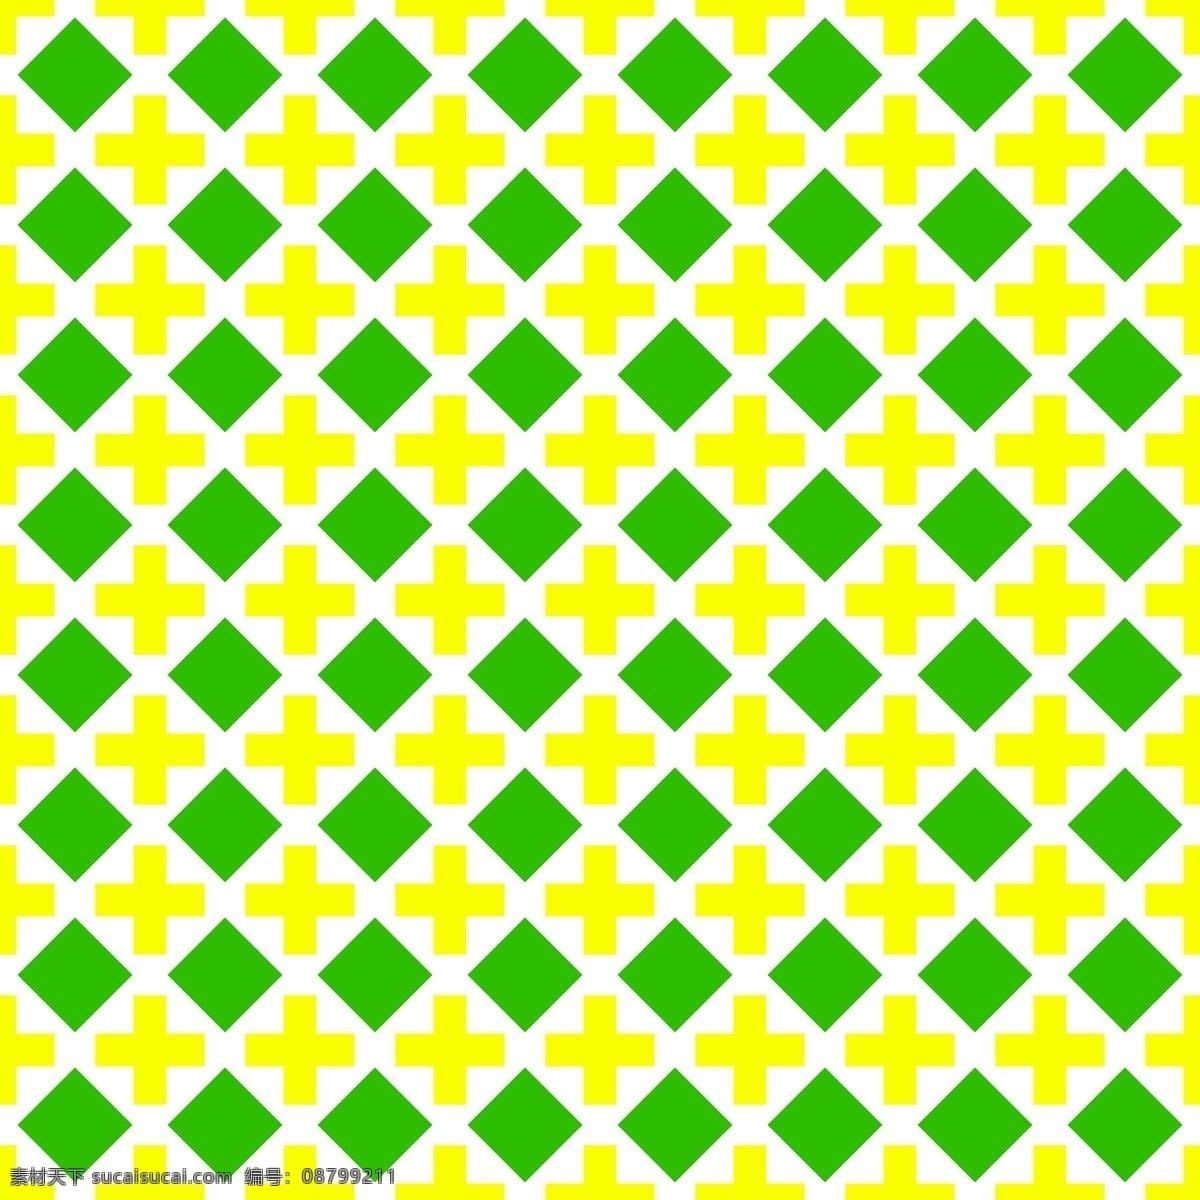 黄绿 菱形 格子 花纹 图案 矢量 背景 棋盘 无缝 四方 连续 平铺 几何线条 包装